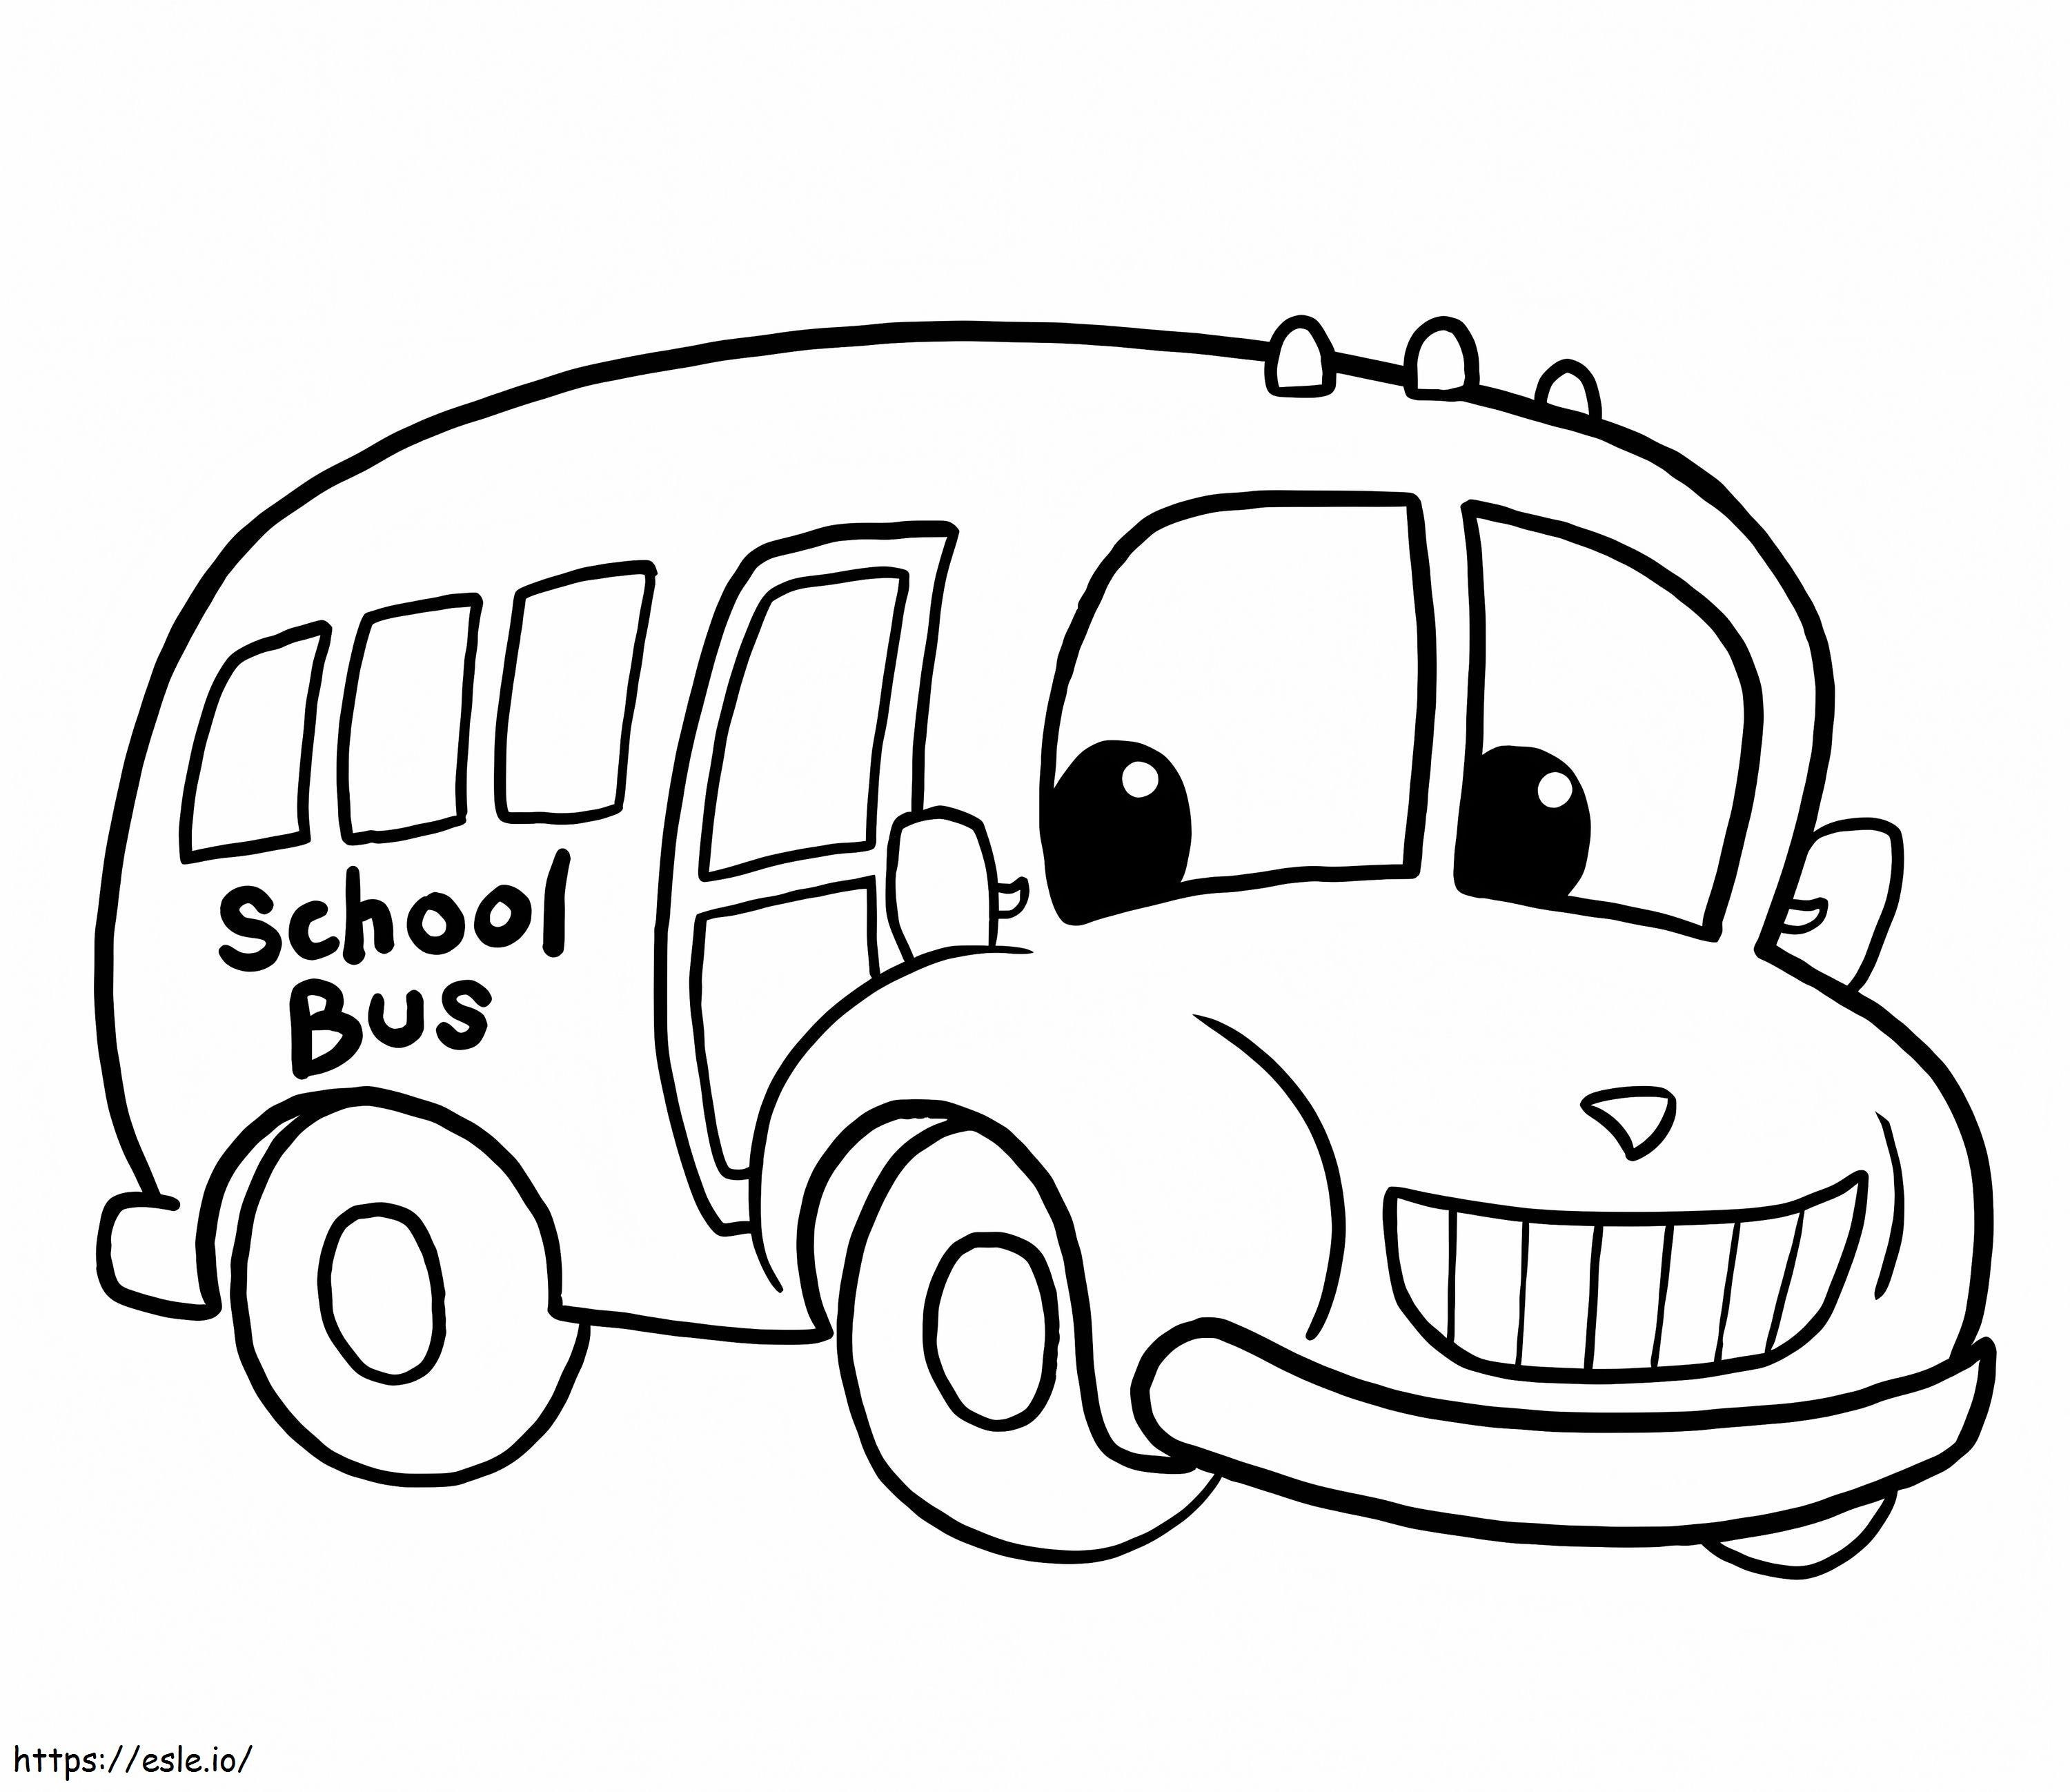 1543543999 Autobuz școlar de desene animate de colorat